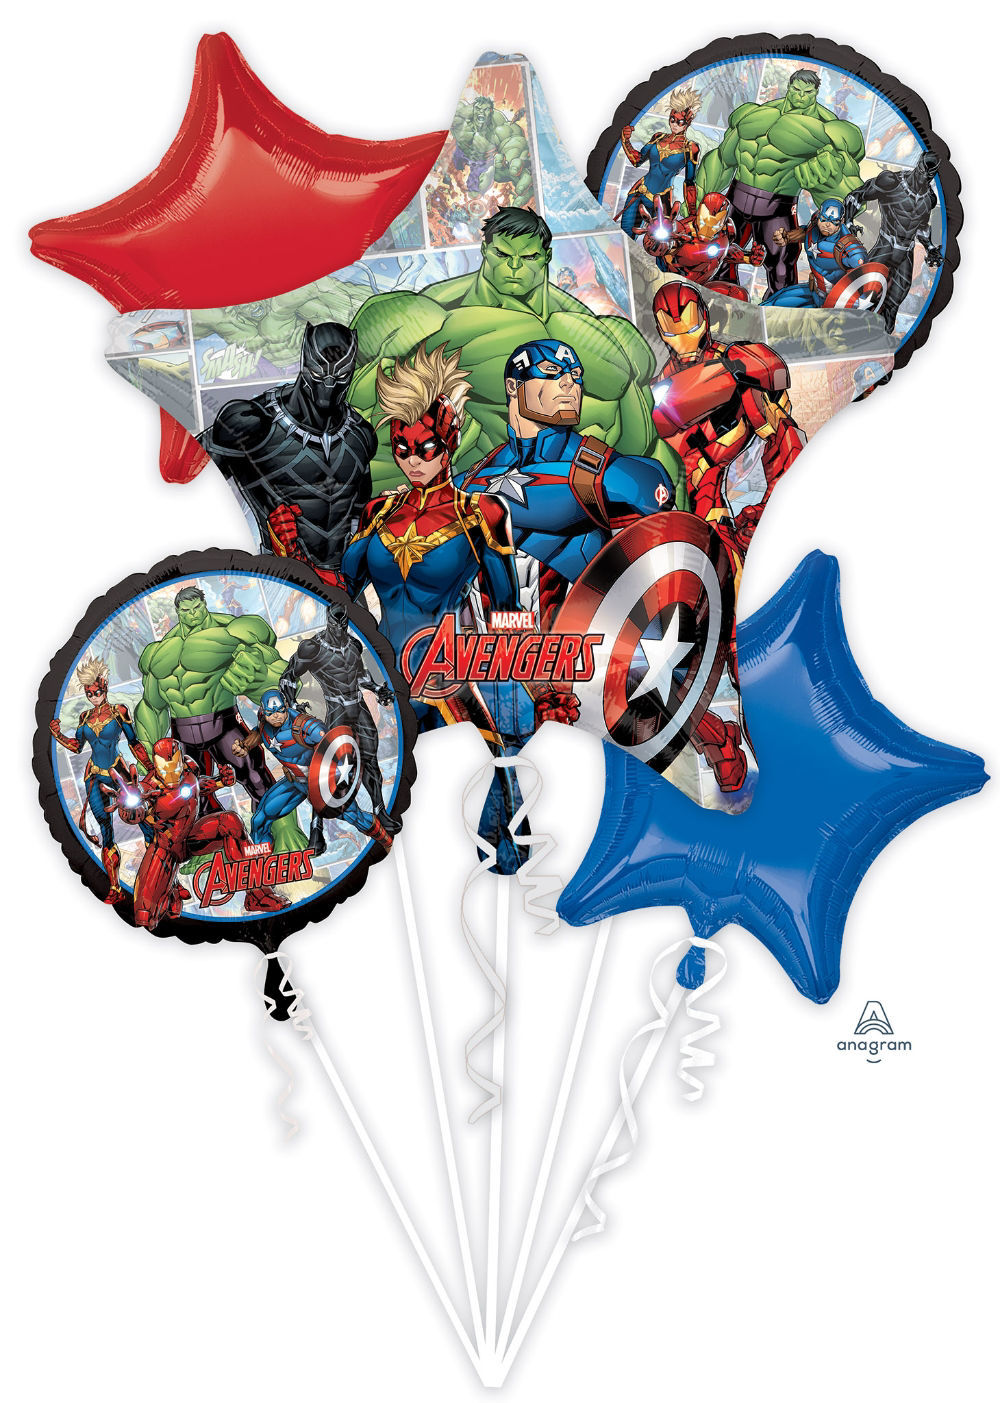 Picture of Avengers Marvel Powers Unite - Foil Balloon Bouquet (5 pc)